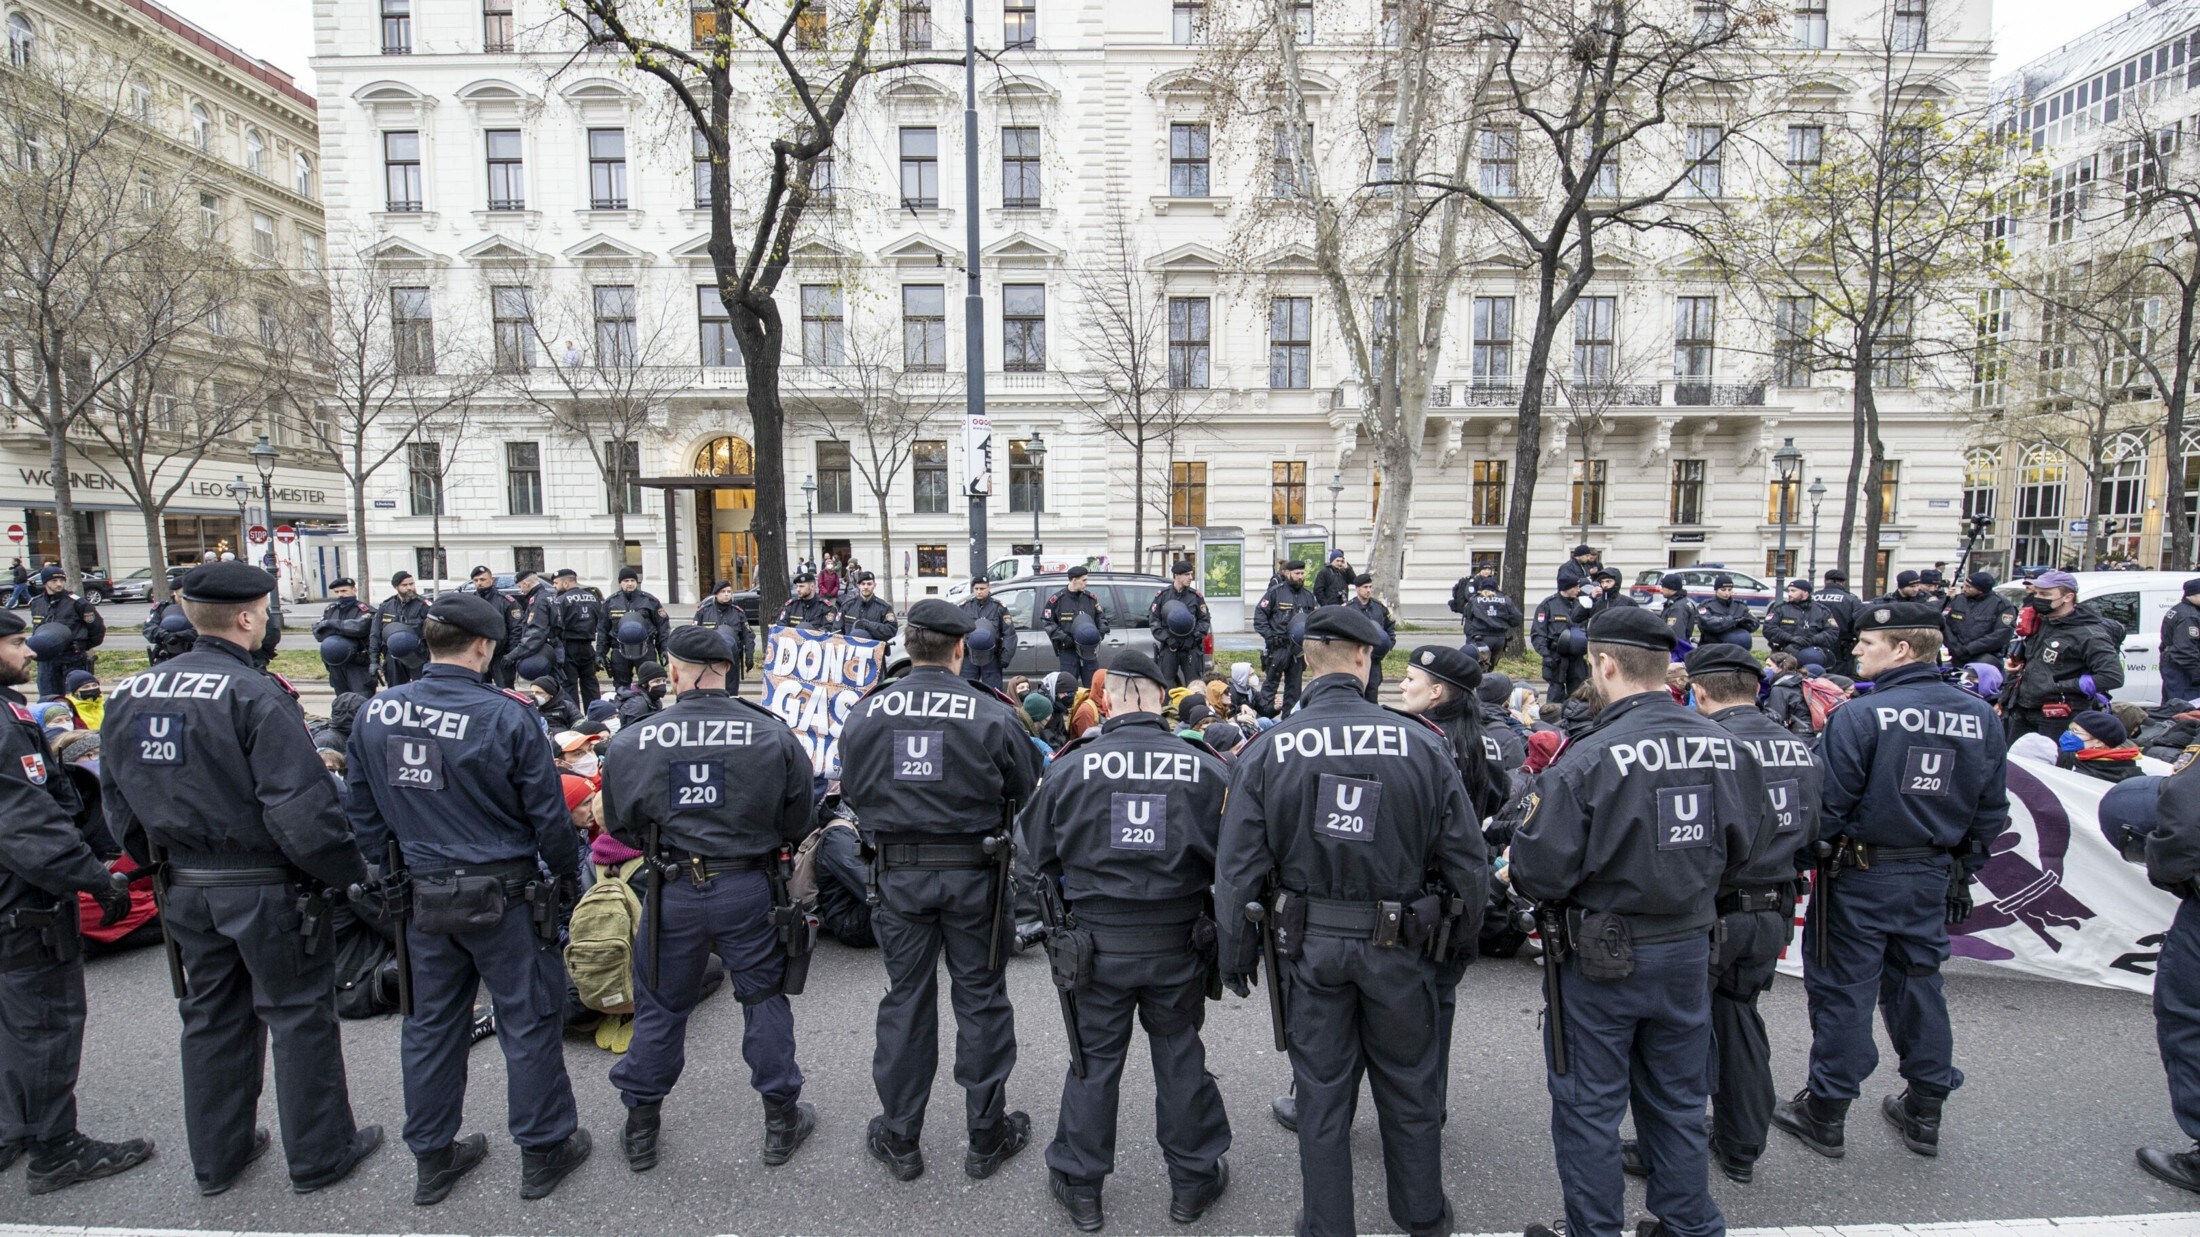 Слезоточивый газ, окружение, задержания —  полицейская операция в Вене